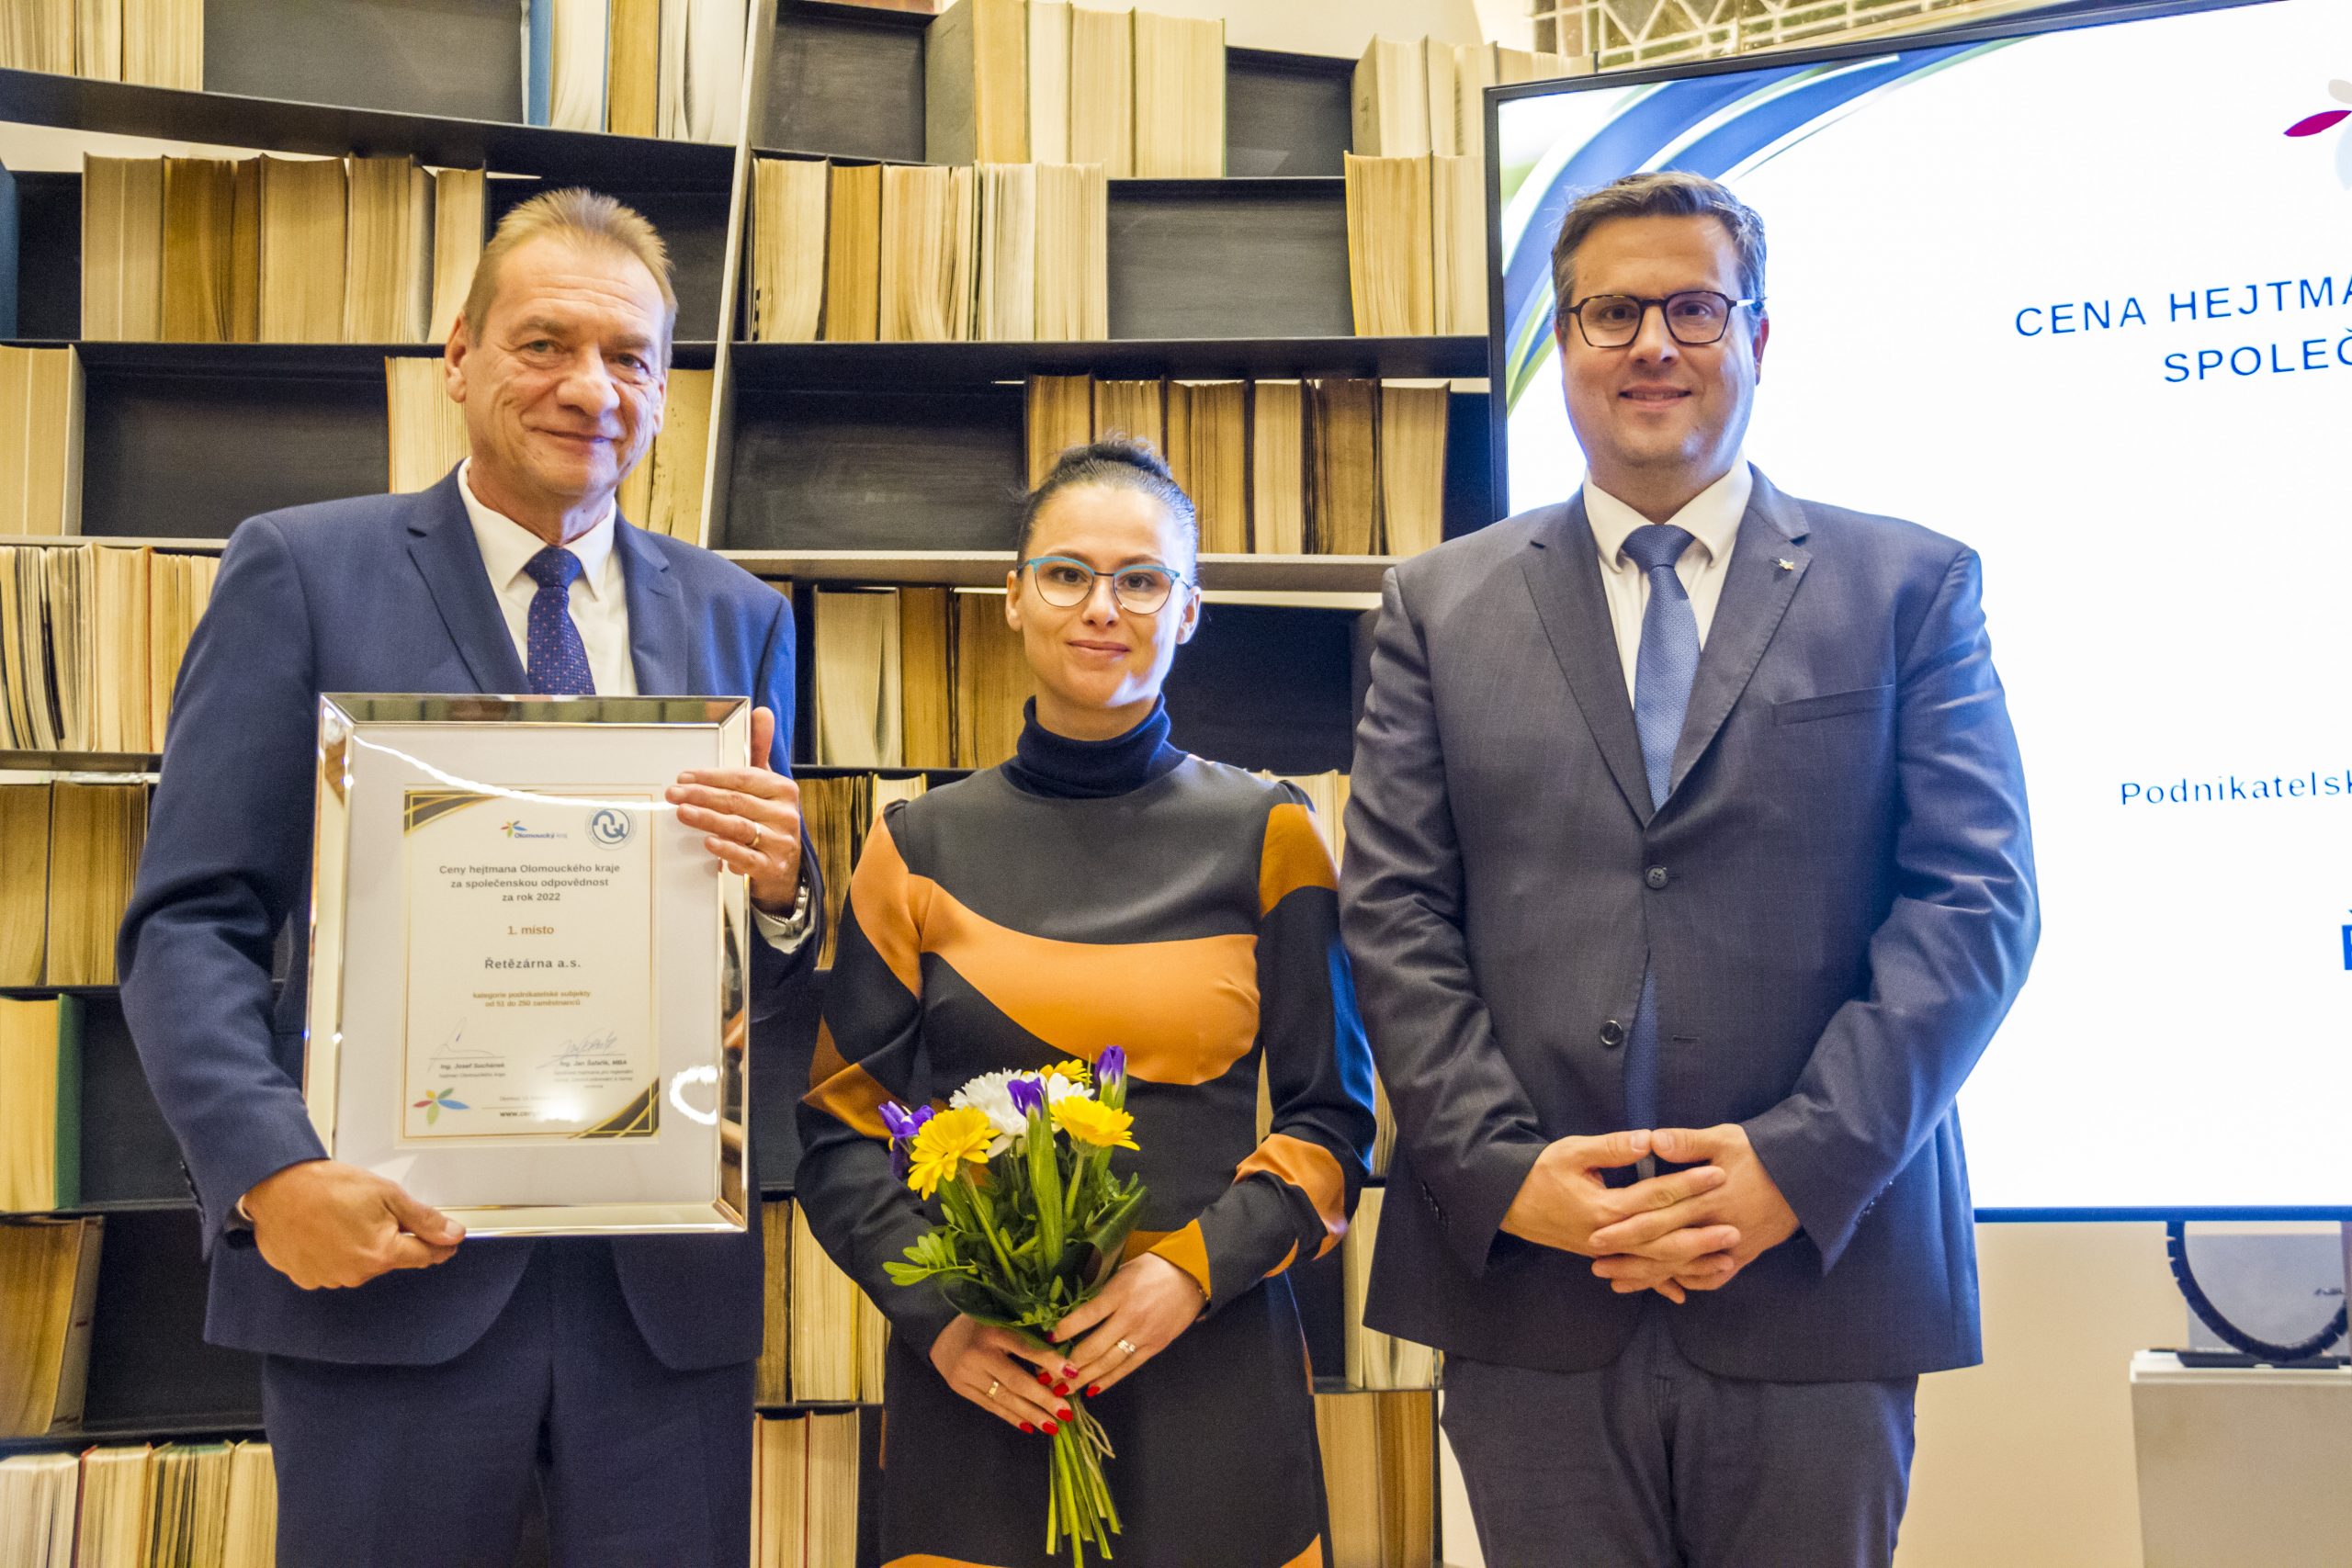 Řetězárna a.s. obdržela cenu hejtmana Olomouckého kraje za společenskou odpovědnost